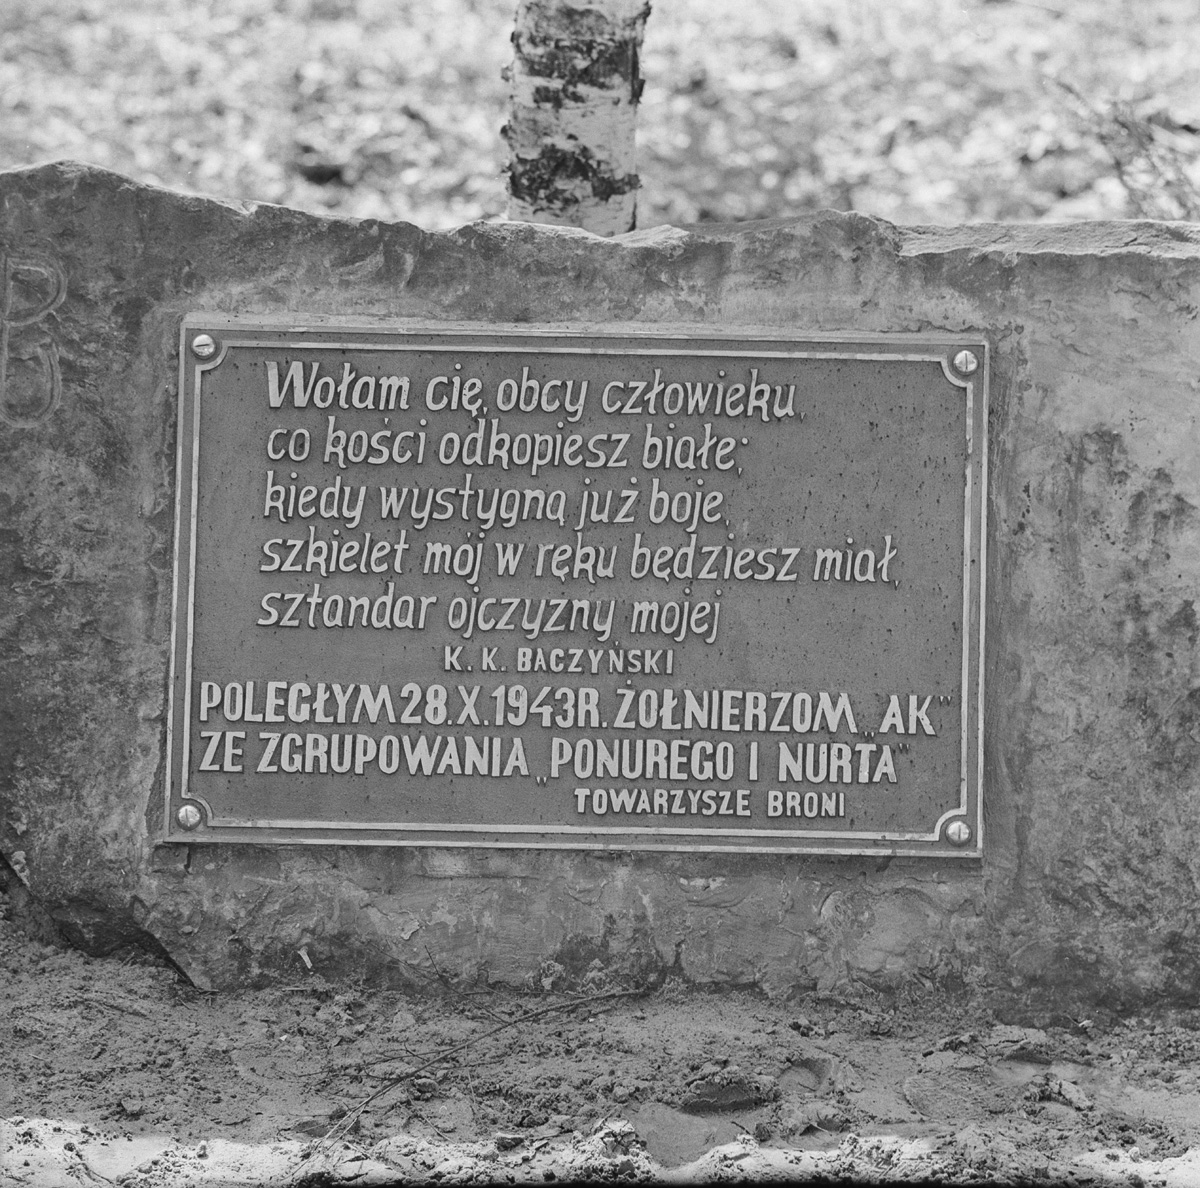 Grave of Andrzej Różycki “Zjawa”